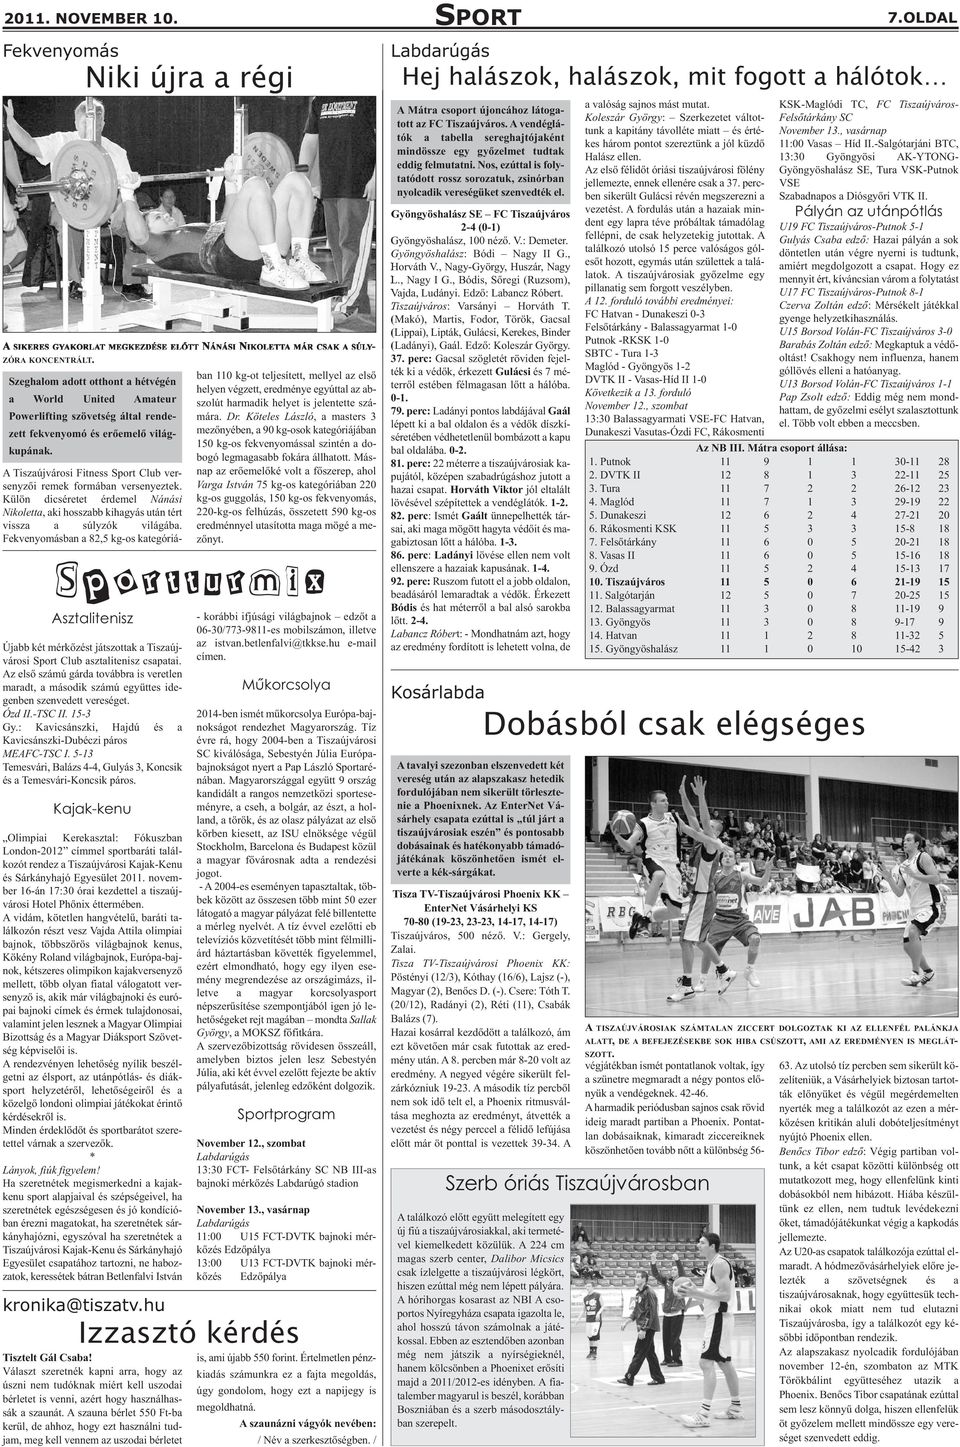 Sportturmix Asztalitenisz Újabb két mérkőzést játszottak a Tiszaújvárosi Sport Club asztalitenisz csapatai.